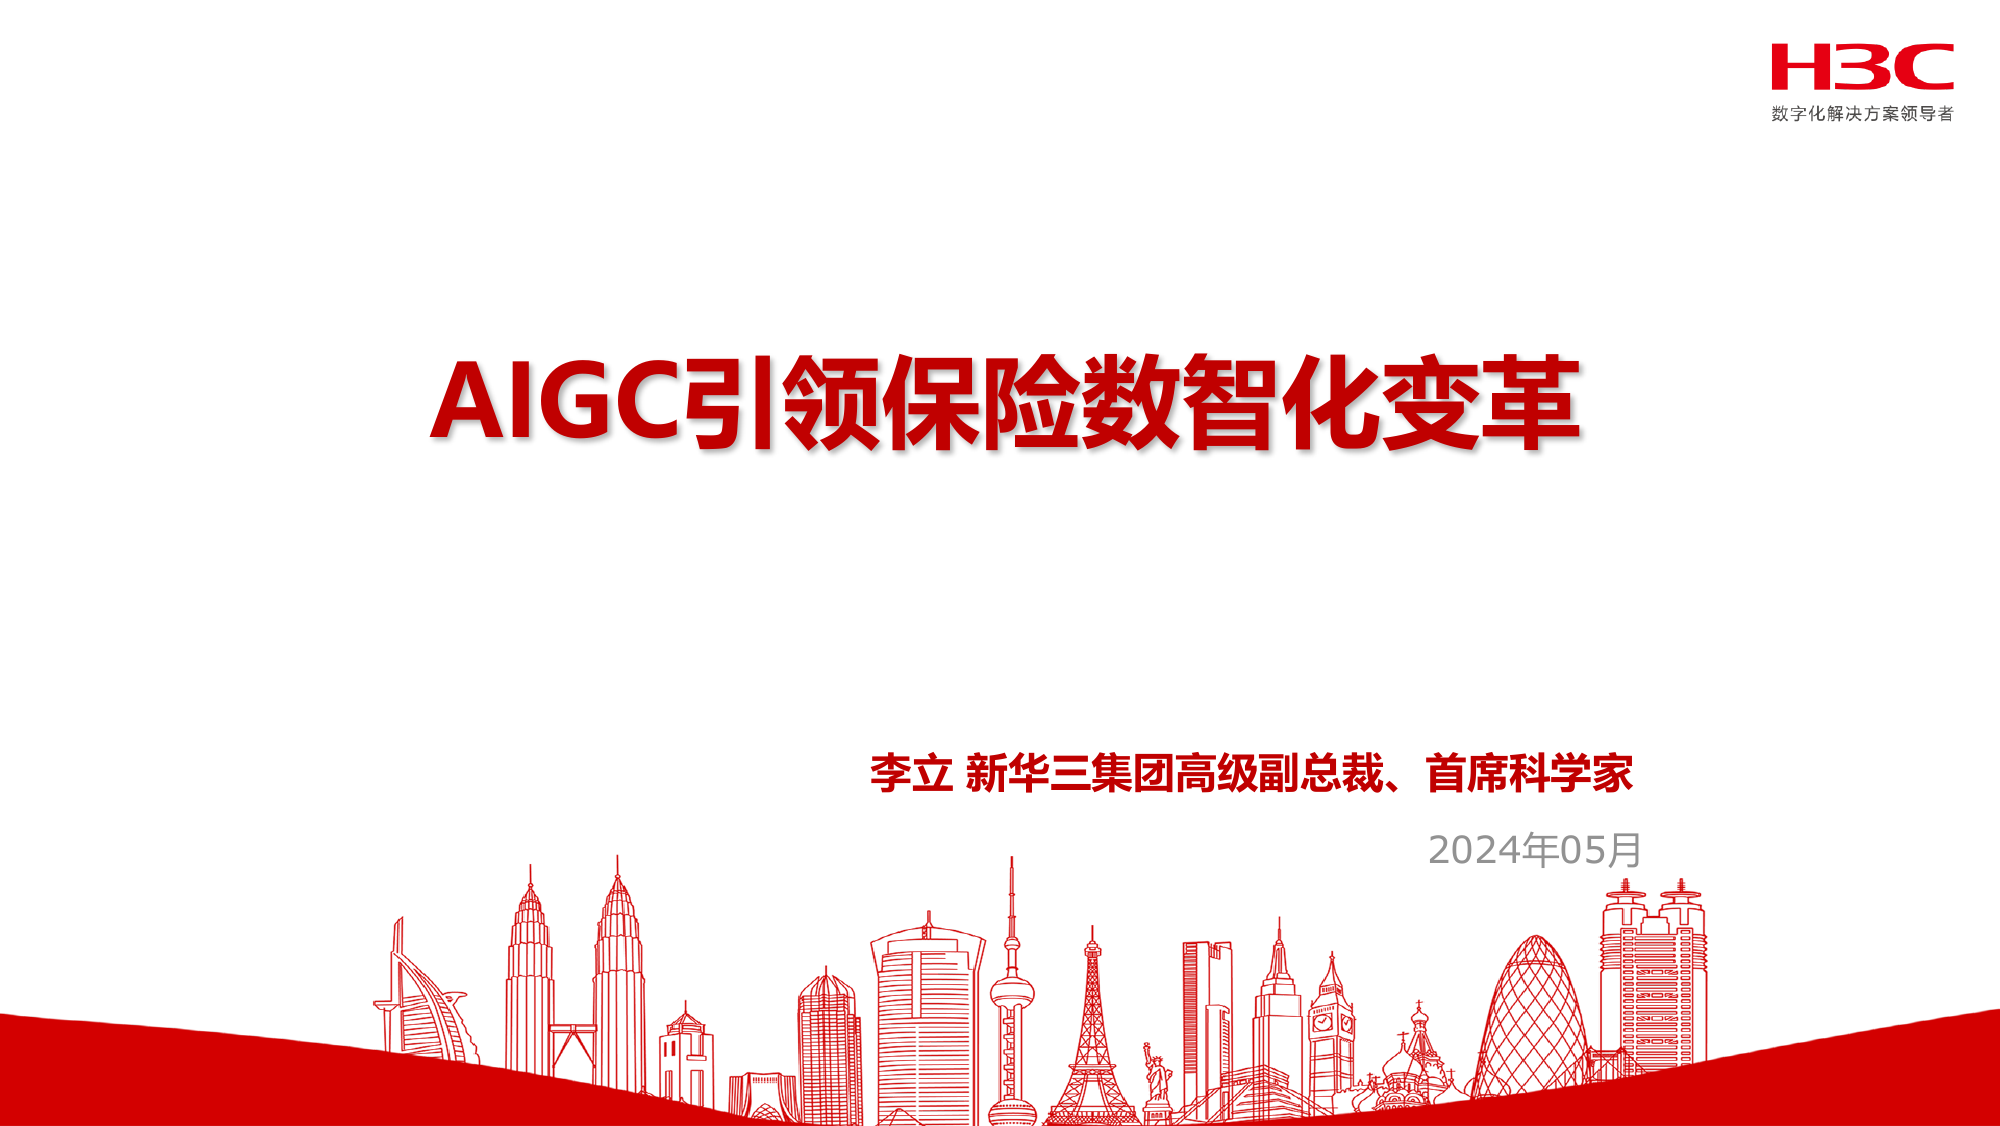 AIGC引领保险数智化变革.pdf